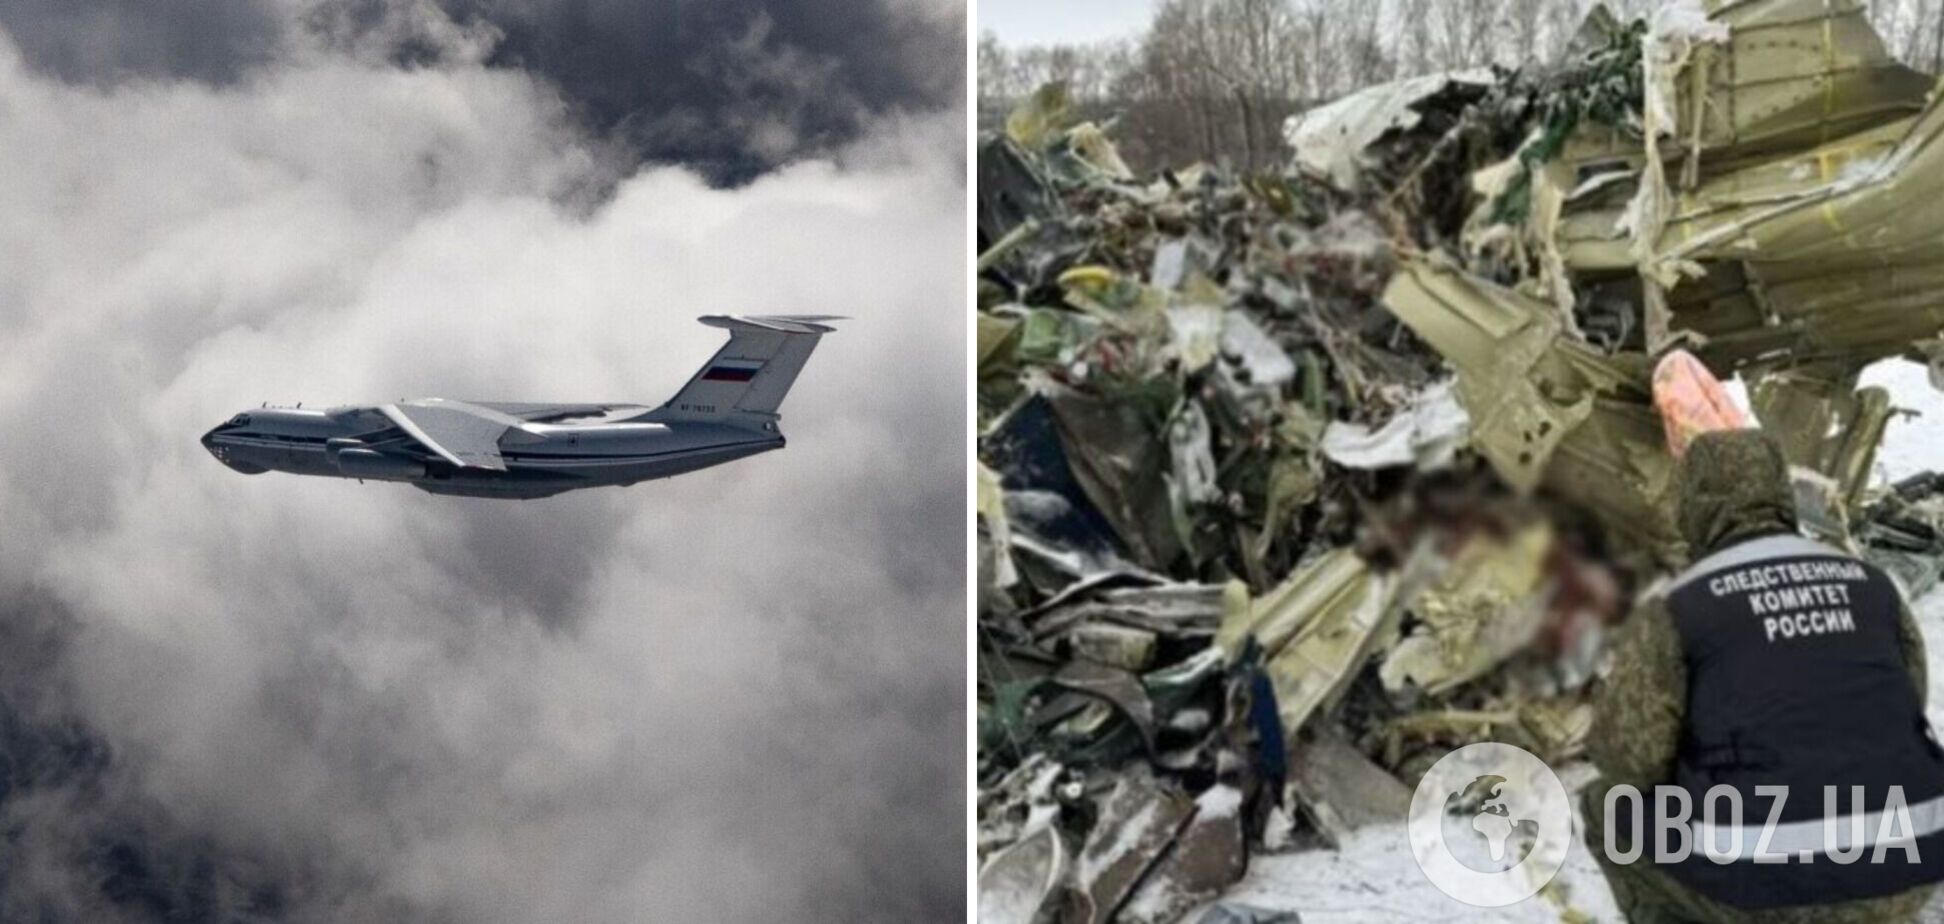 Россия не предоставила доказательств своей версии авиакатастрофы Ил-76 – США в ОБСЕ